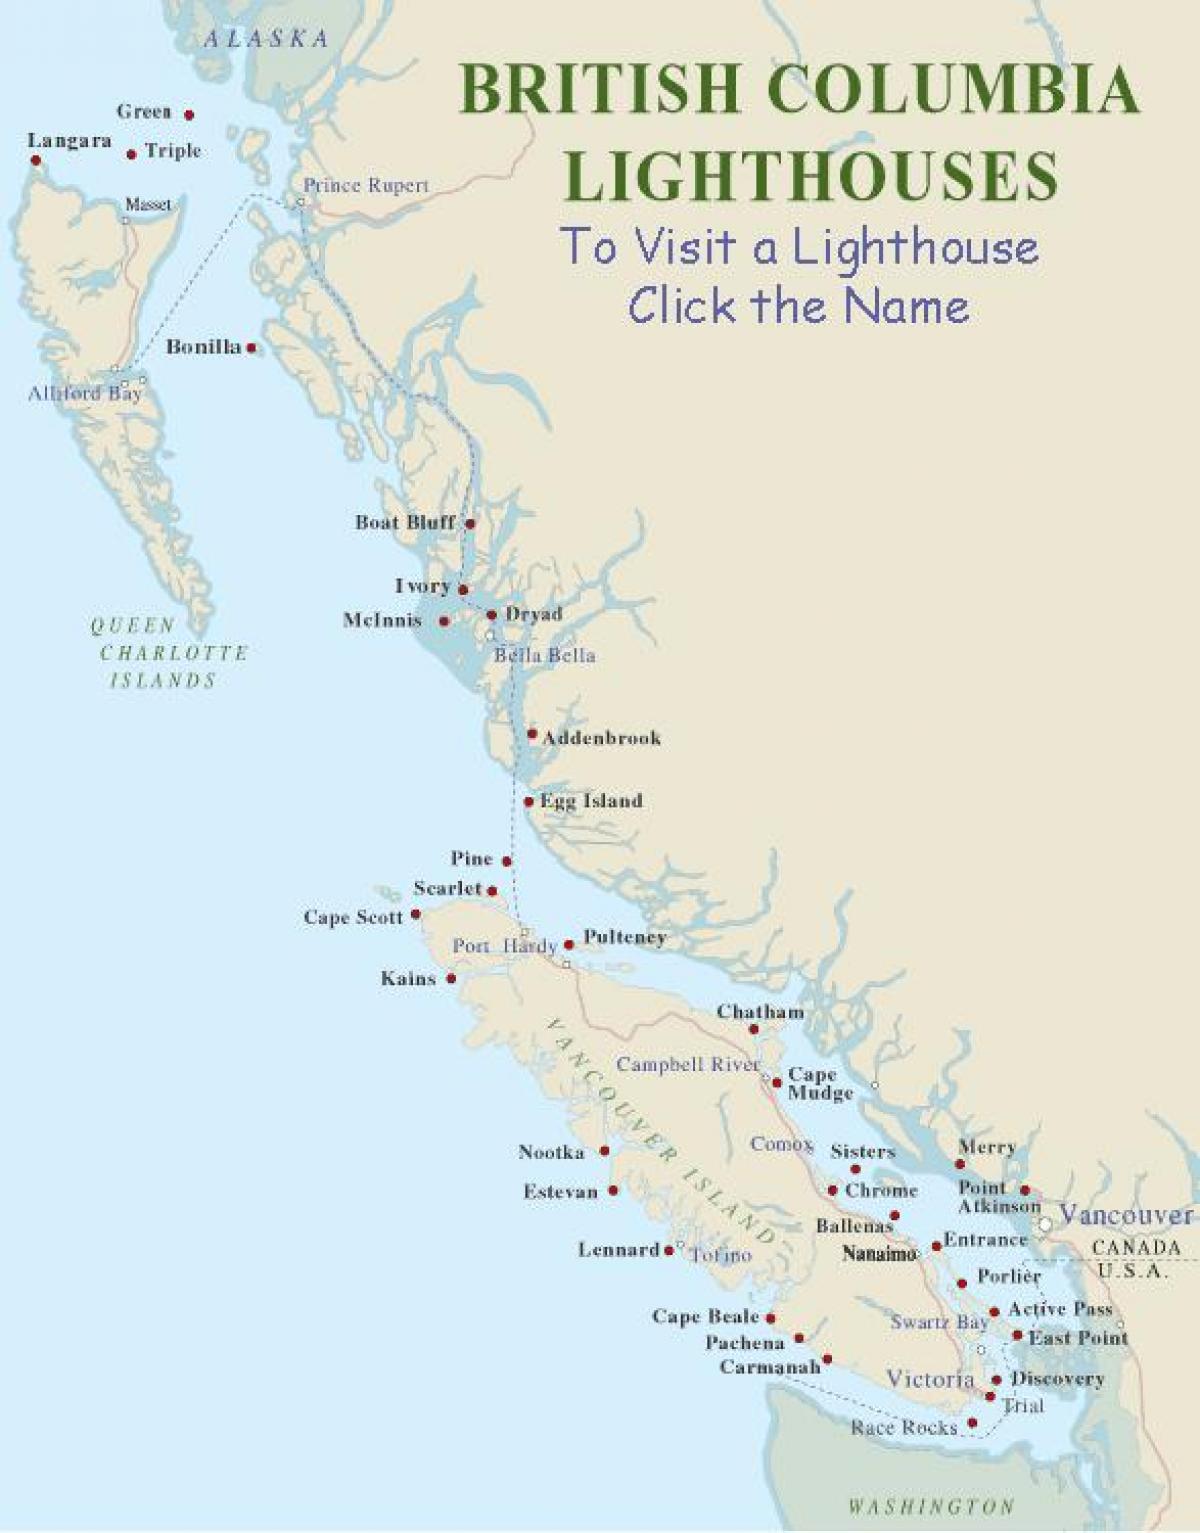 Vancouver Adası haritası fenerler